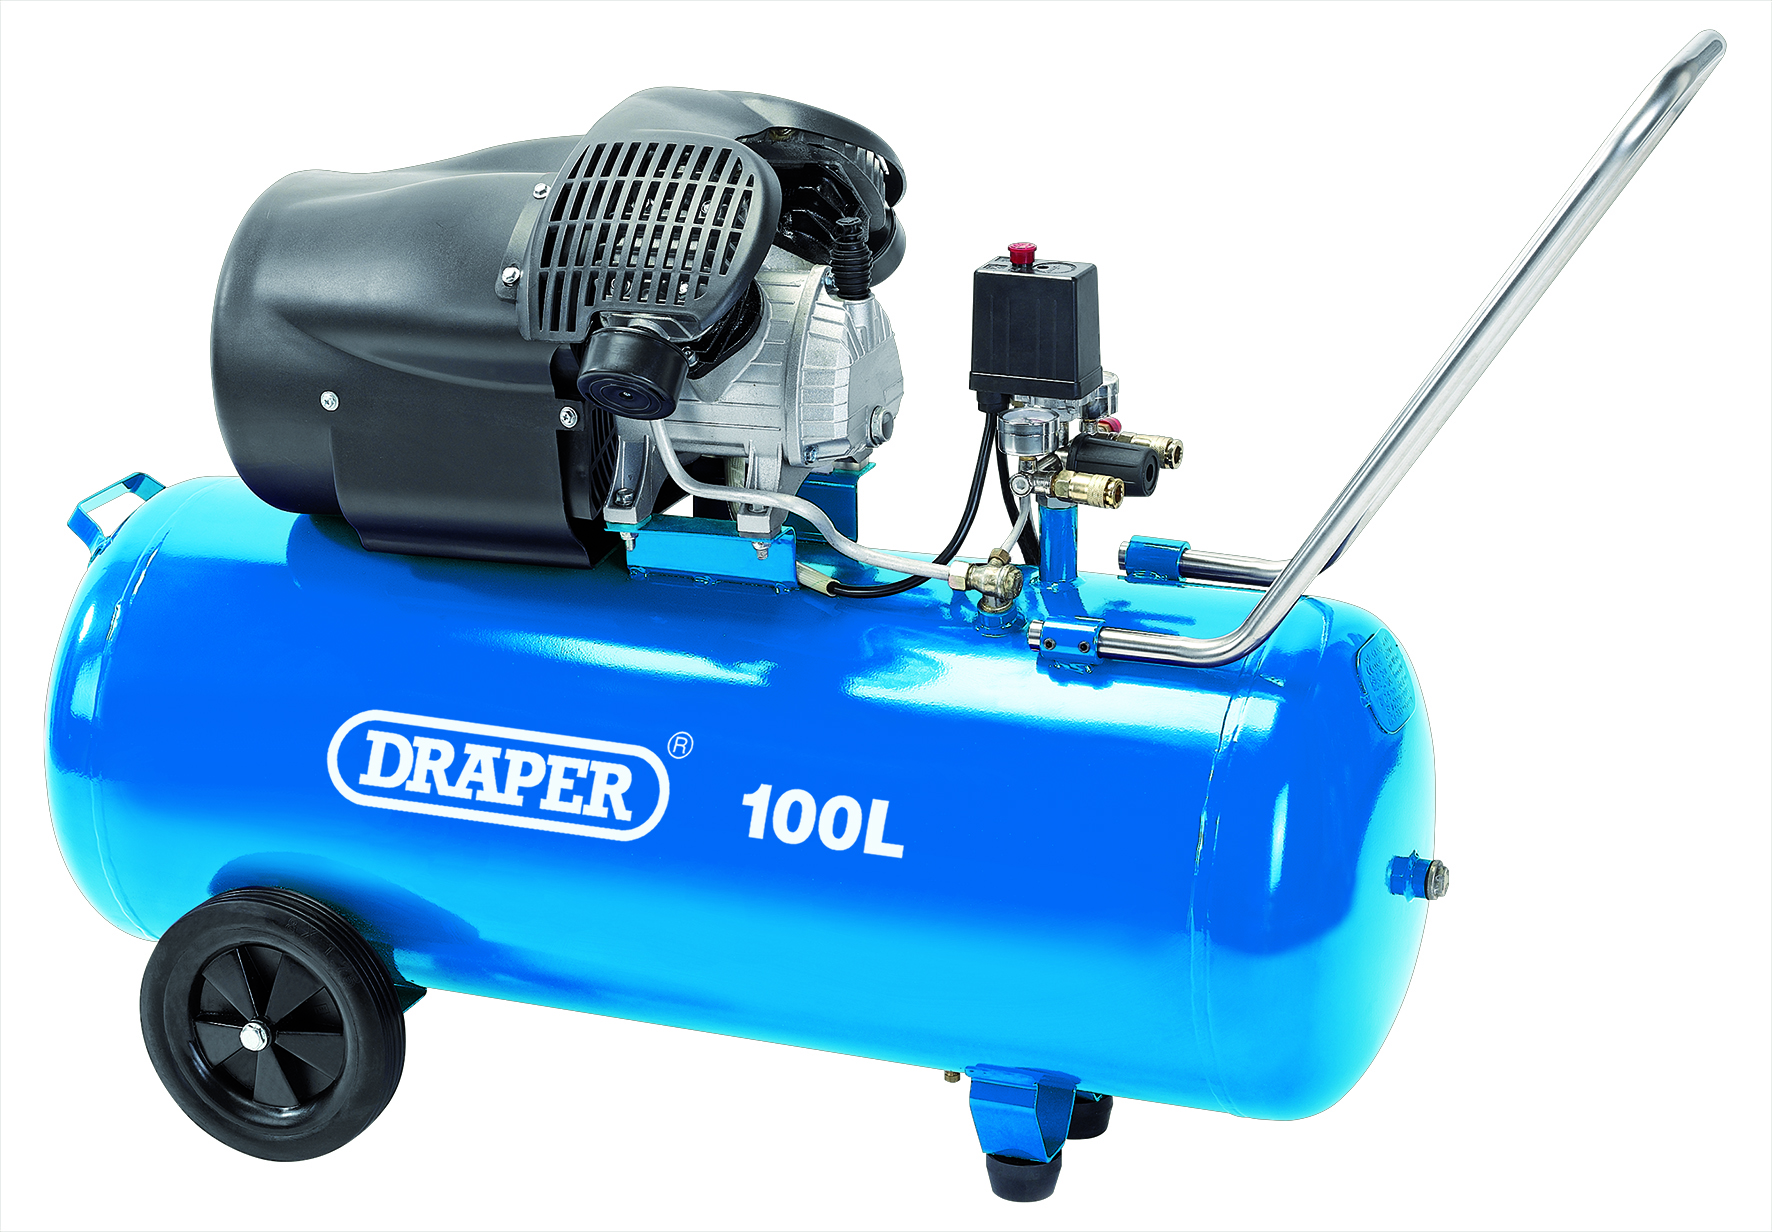 Draper DA100/412TV 100L Direct Drive V-Twin Air Compressor - 2.2kW